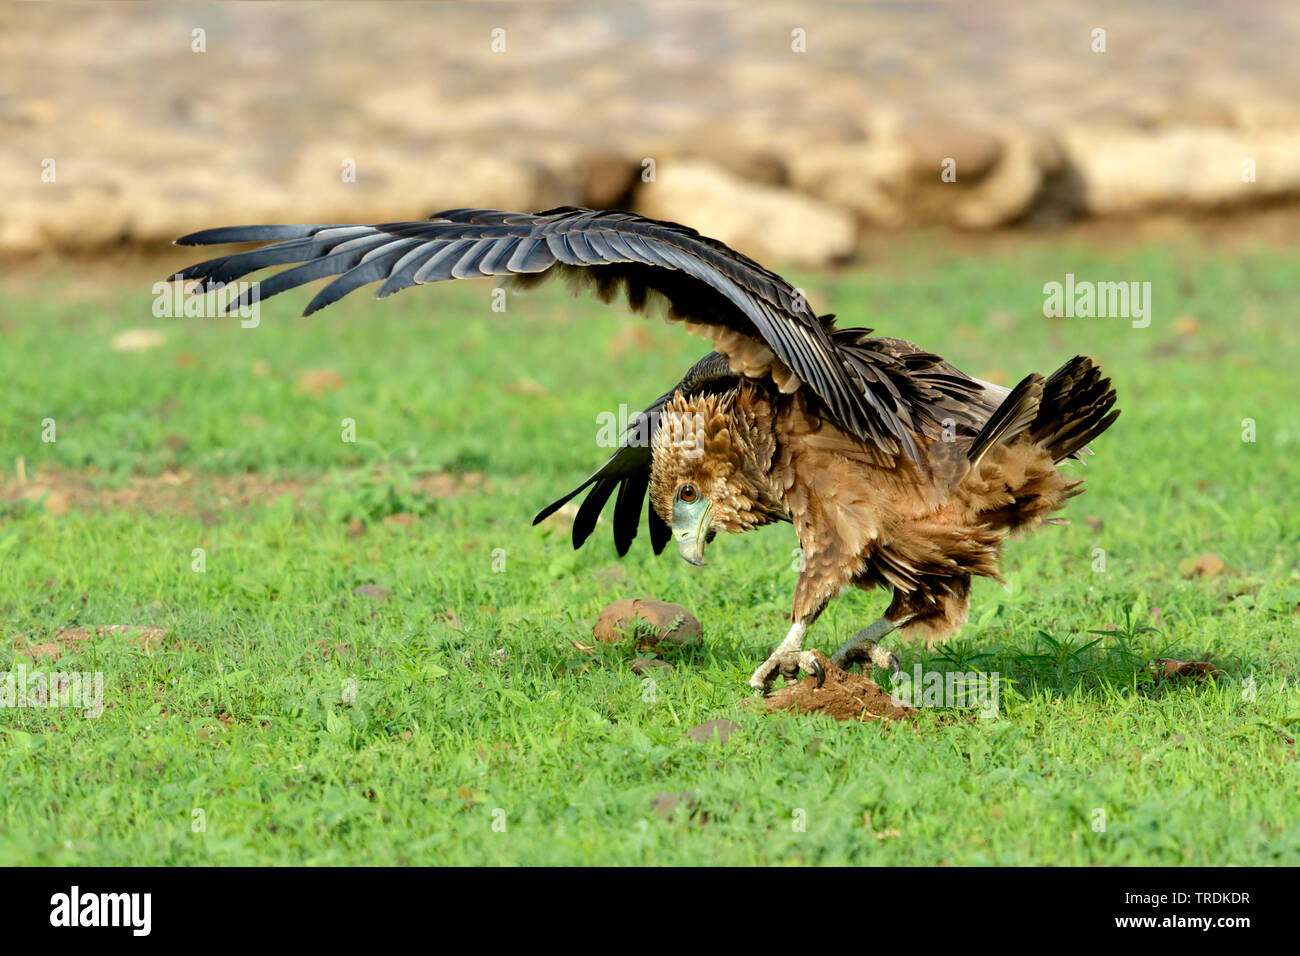 Bruno eagle (Aquila rapax), giovane bird stringendo in un buco nel terreno, vista laterale, Sud Africa, Lowveld Krueger National Park Foto Stock